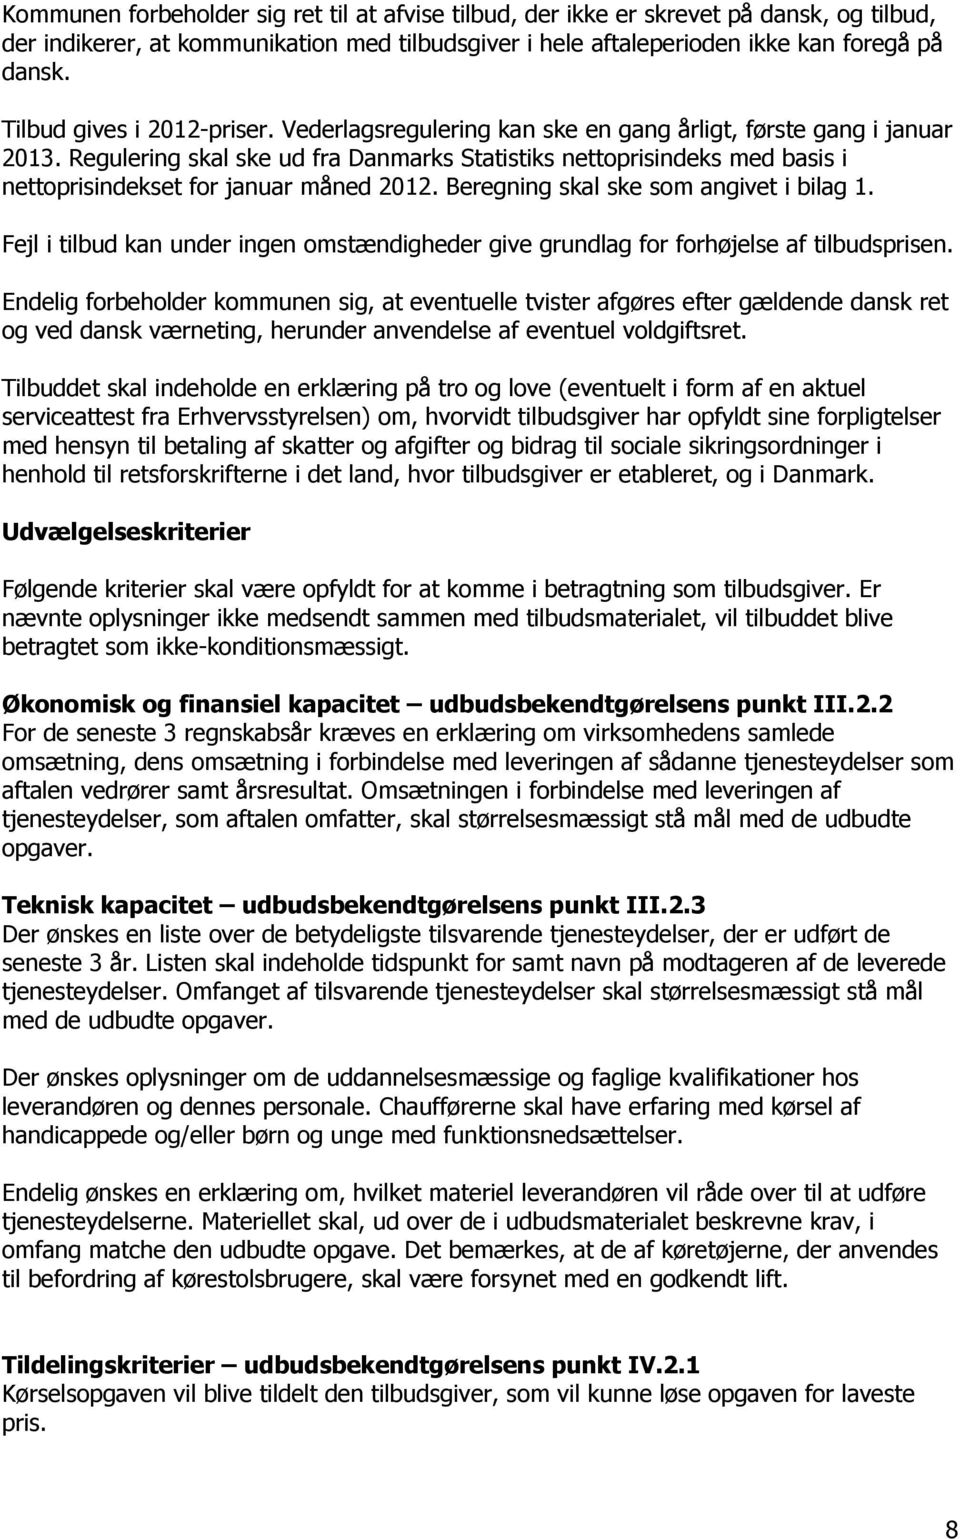 Regulering skal ske ud fra Danmarks Statistiks nettoprisindeks med basis i nettoprisindekset for januar måned 2012. Beregning skal ske som angivet i bilag 1.